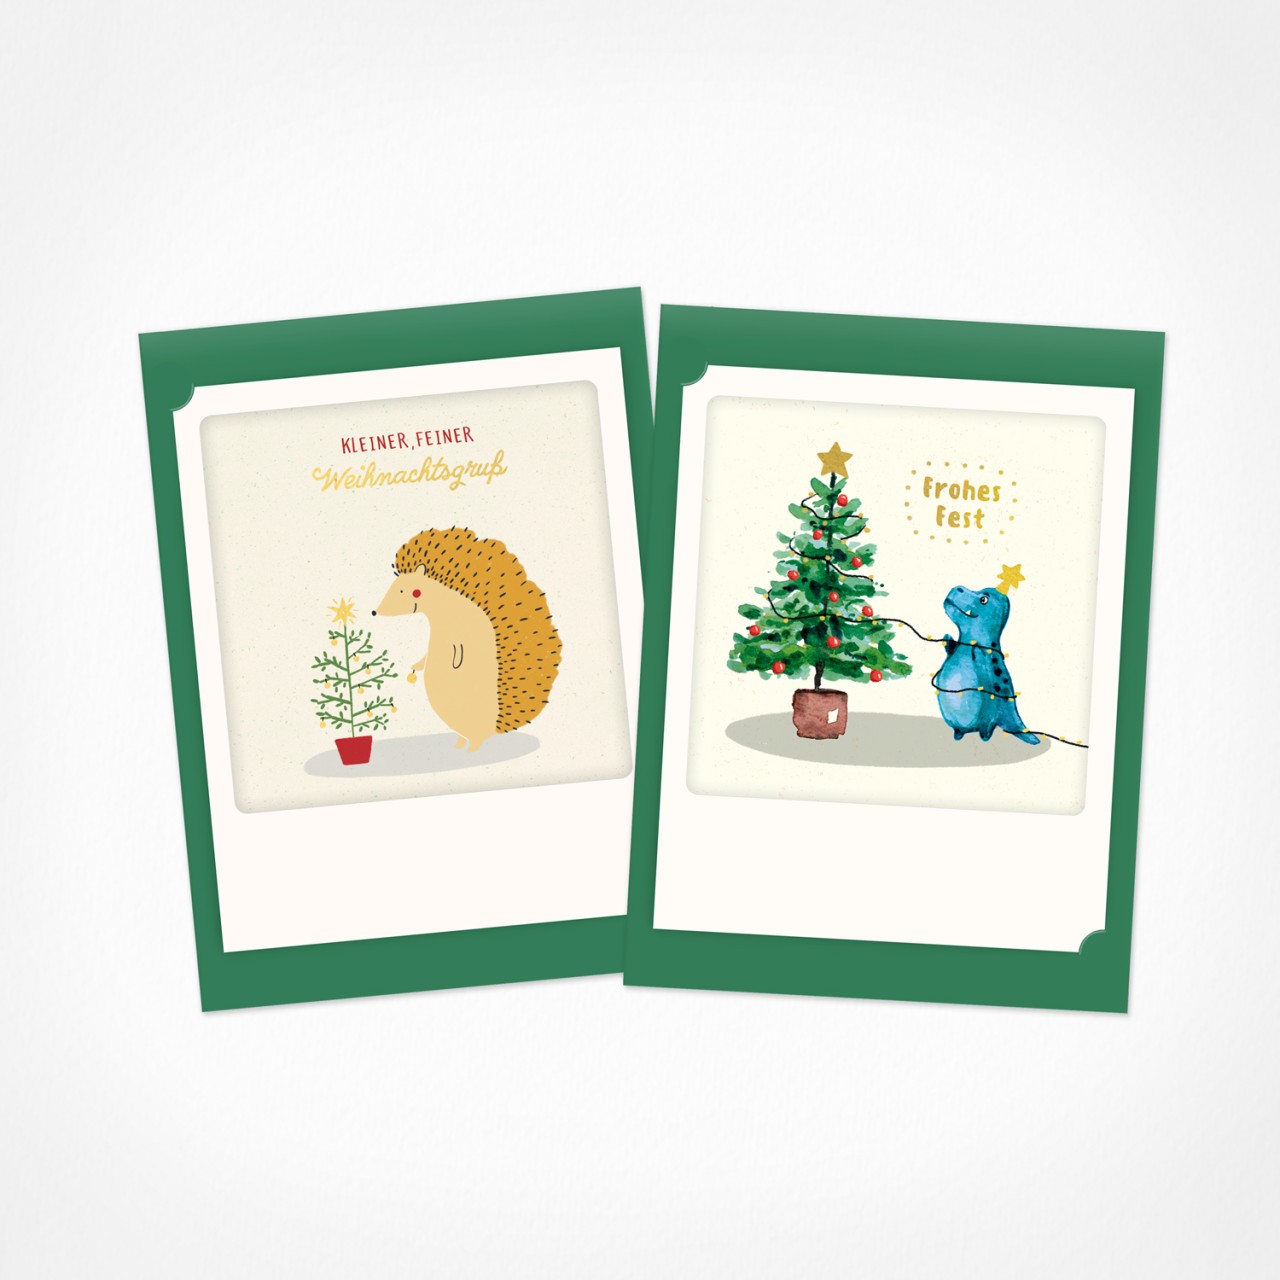 Kleiner, feiner Weihnachtsgruß | Weihnachtskarten | 2 Klappkarten